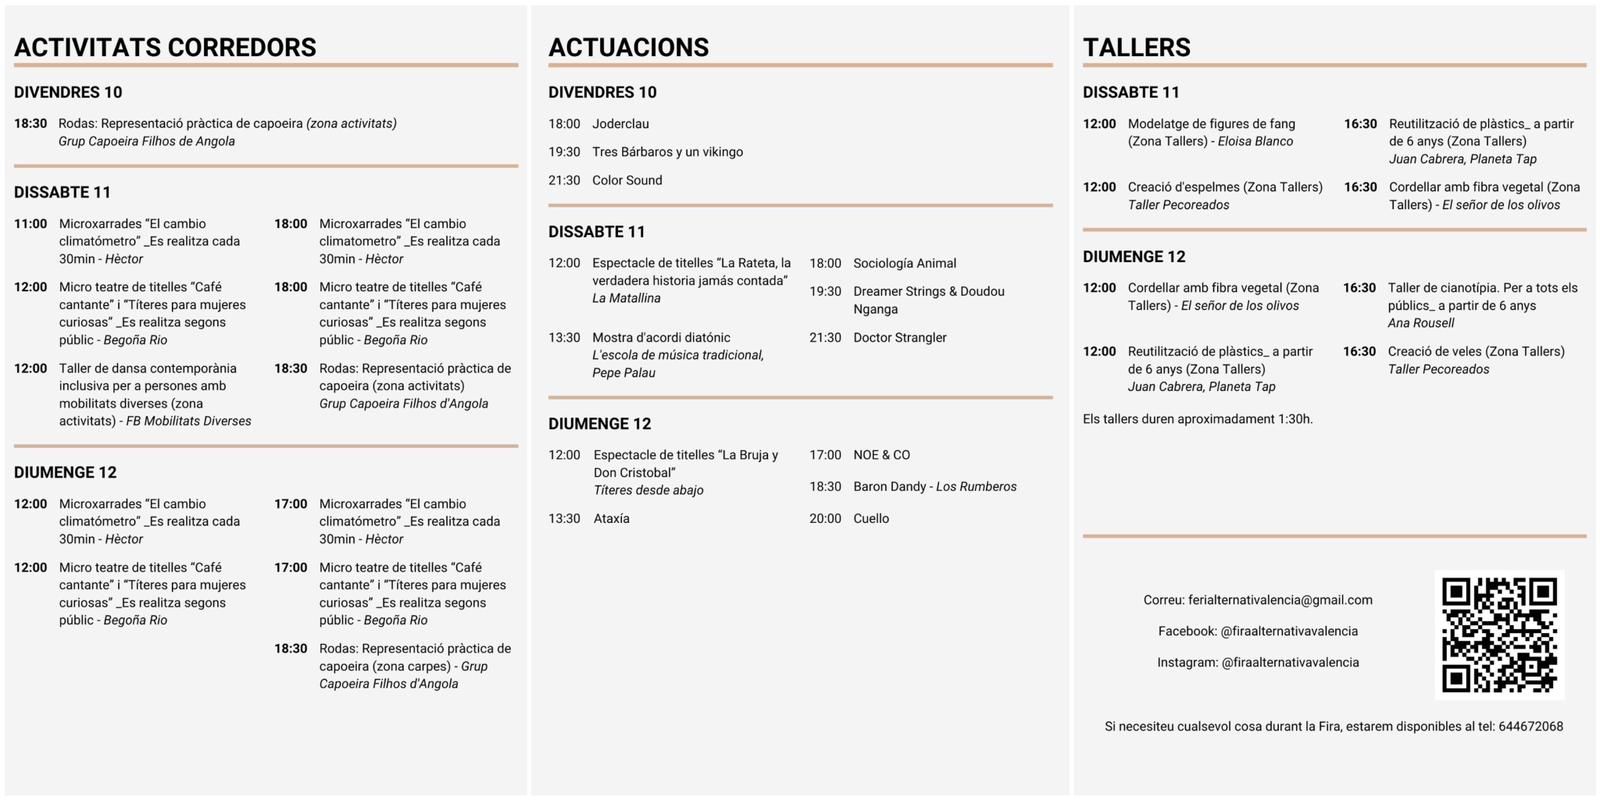 Actividades, actuaciones y talleres de la Fira Alternativa de València.